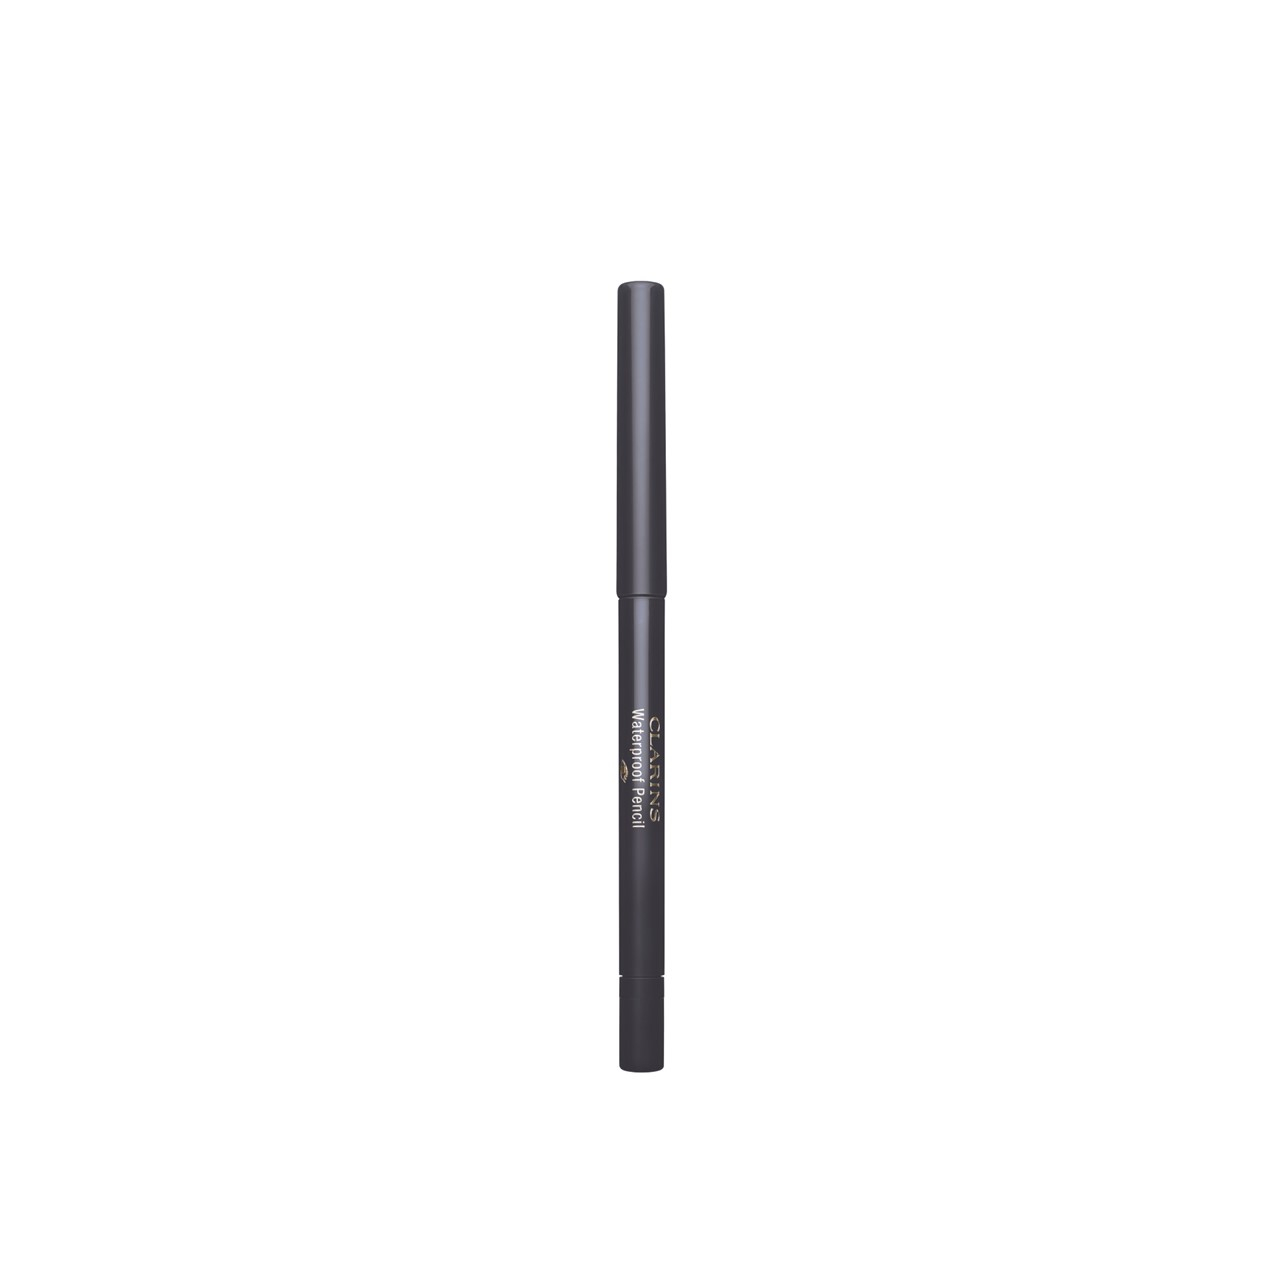 Clarins Waterproof Pencil Long-Lasting Eyeliner 06 Smoked Wood 0.29g (0.01oz)